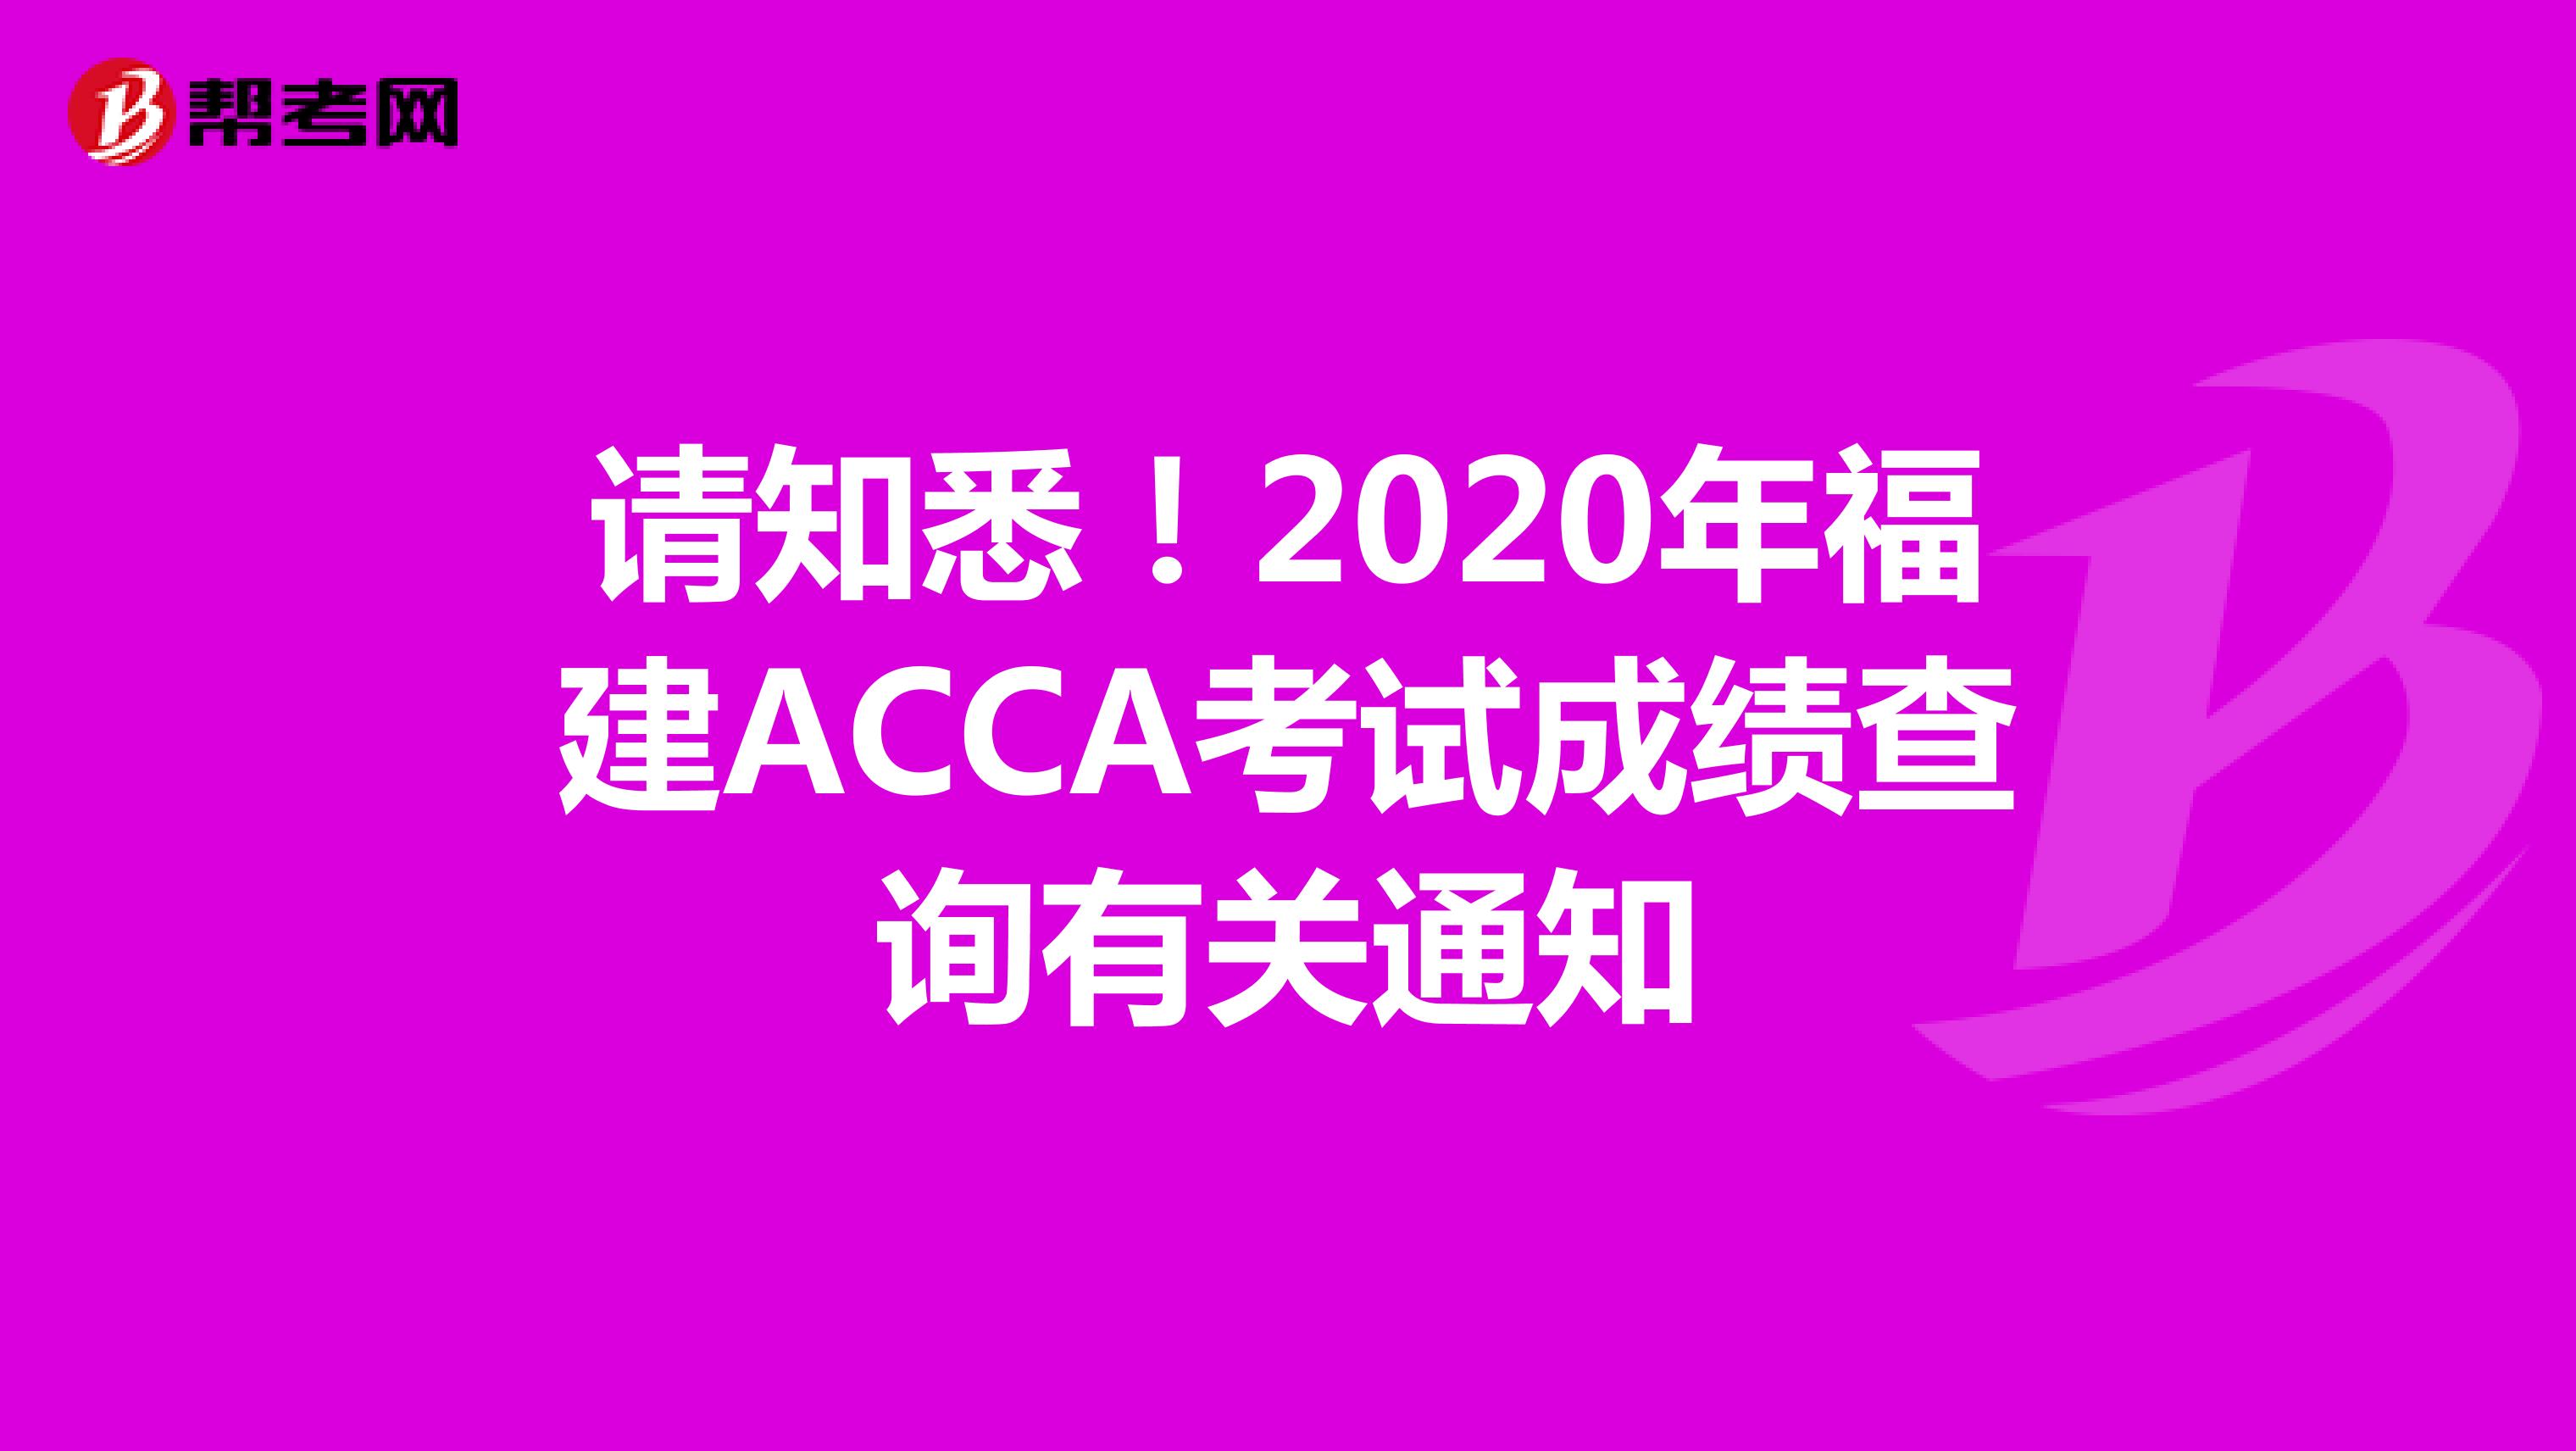 请知悉！2020年福建ACCA考试成绩查询有关通知